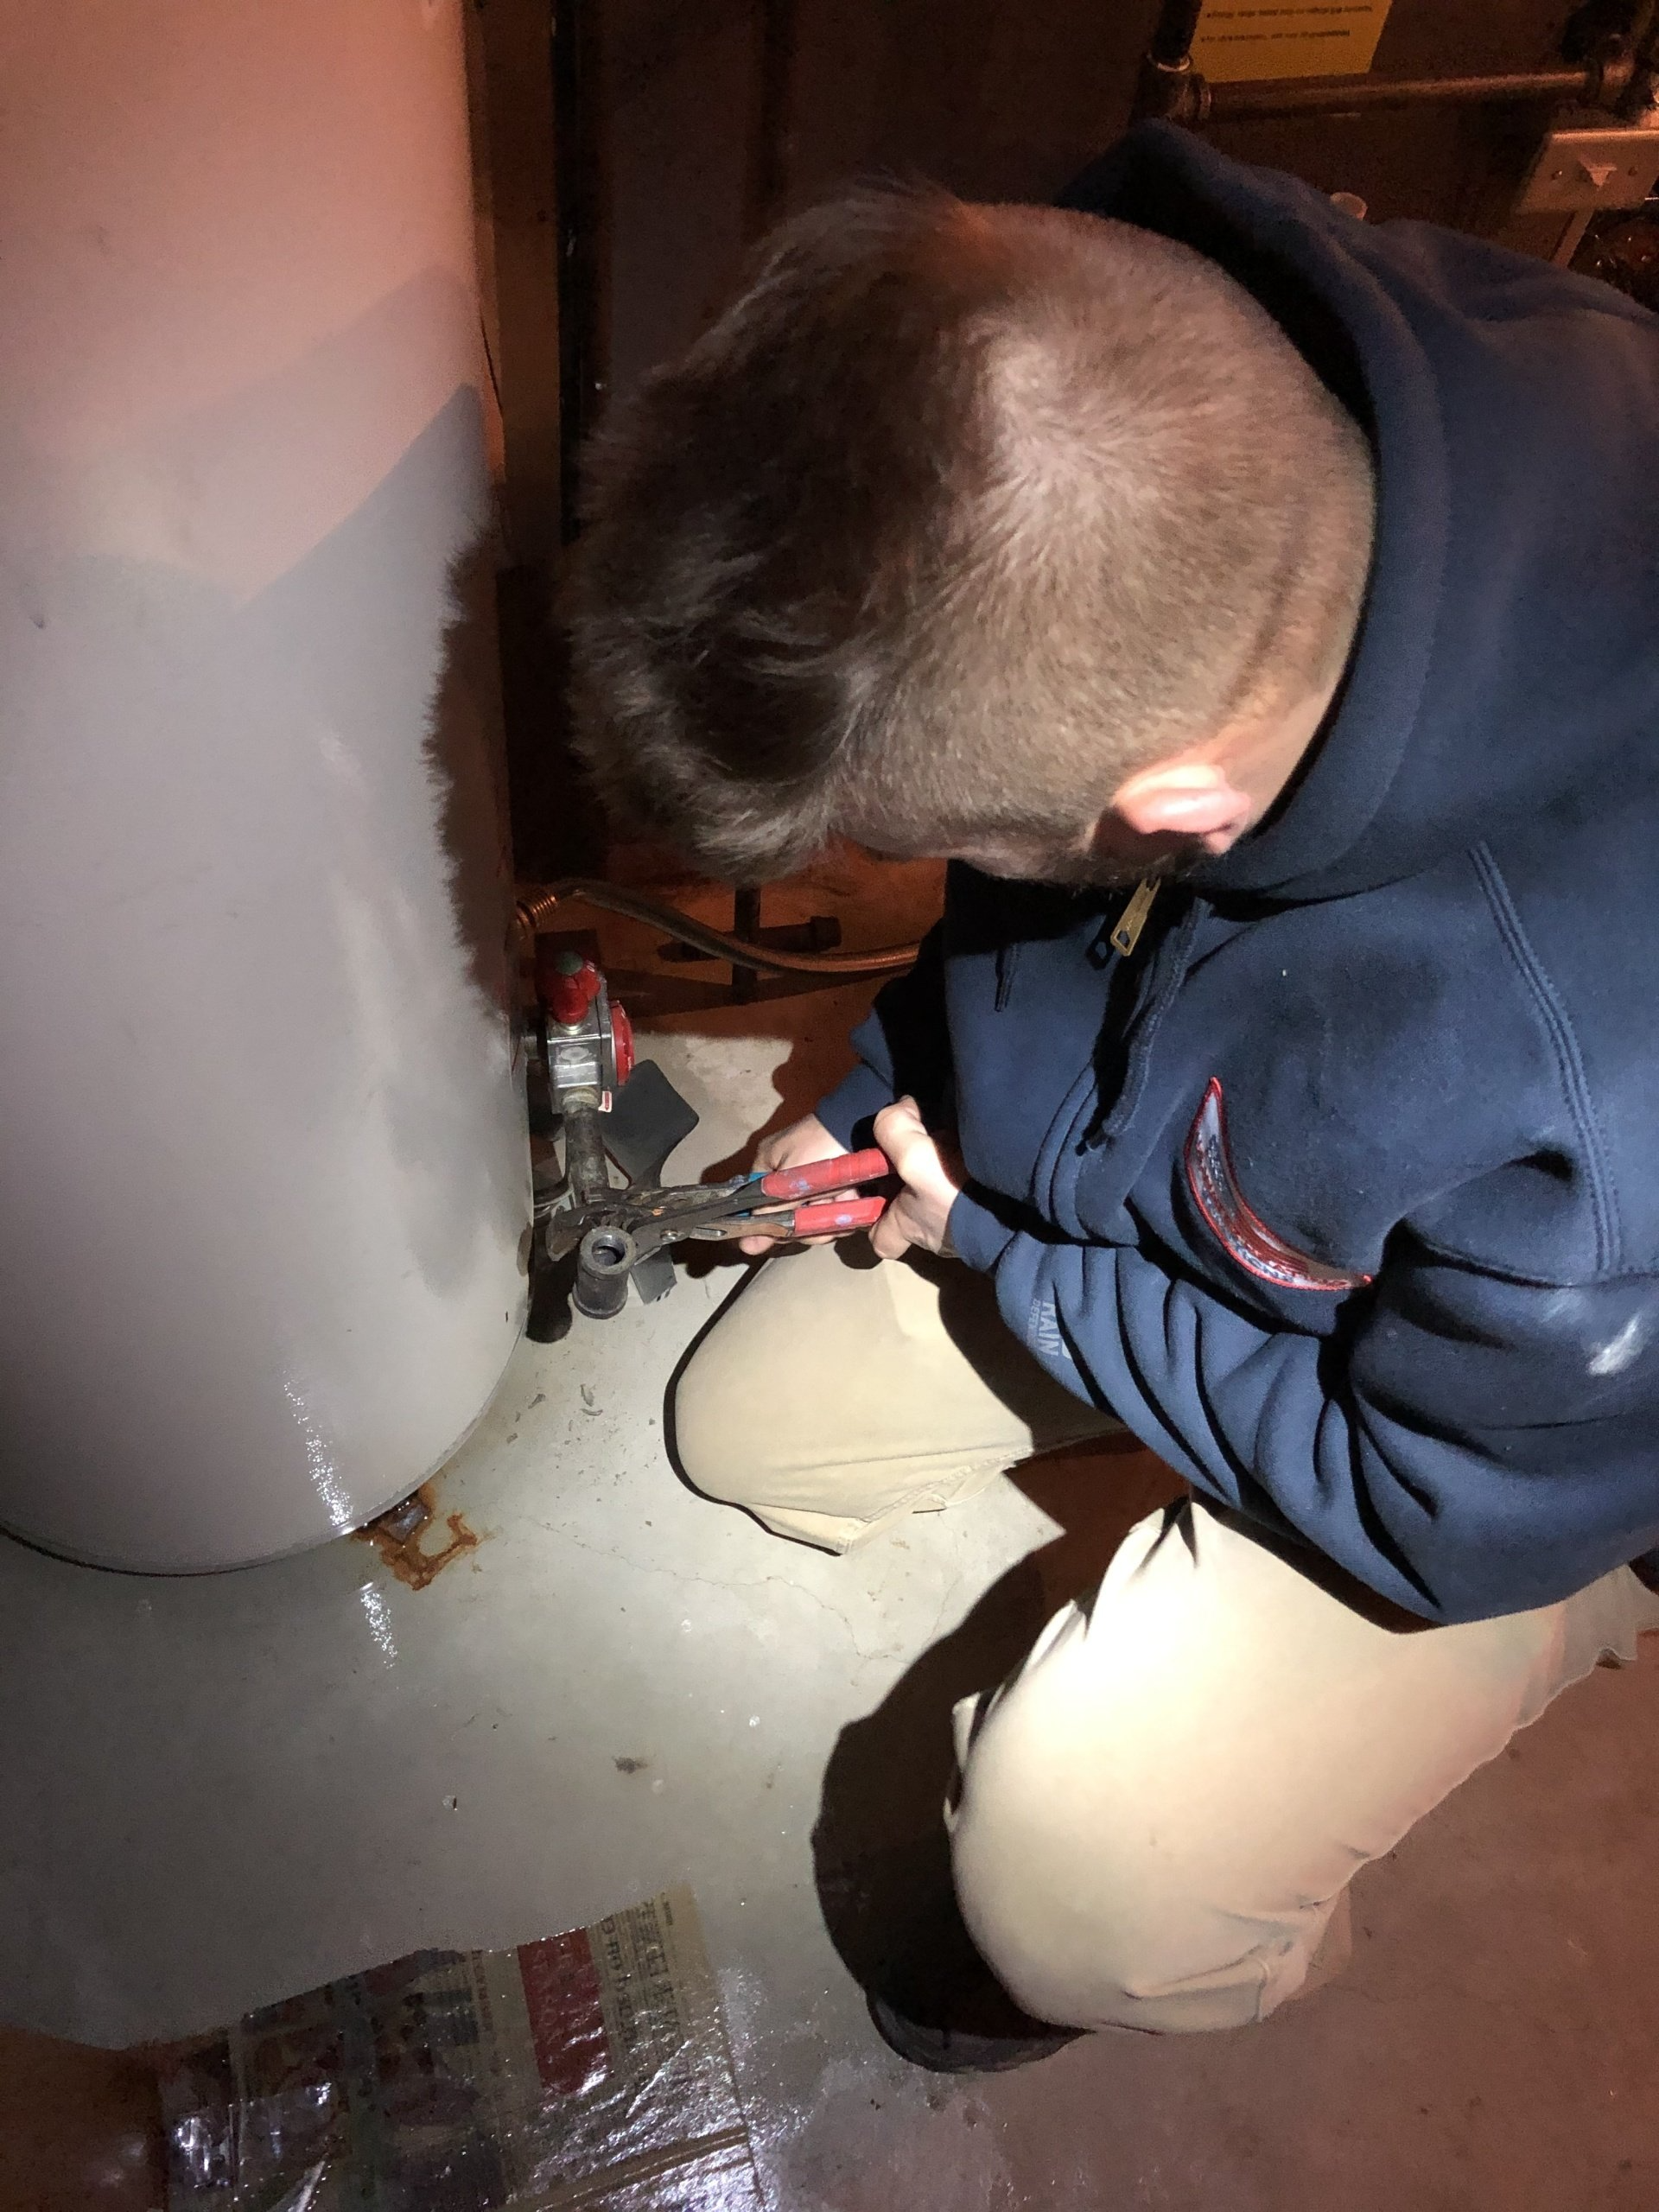 técnico de servicio cambiando una válvula de gas, termostato de gas